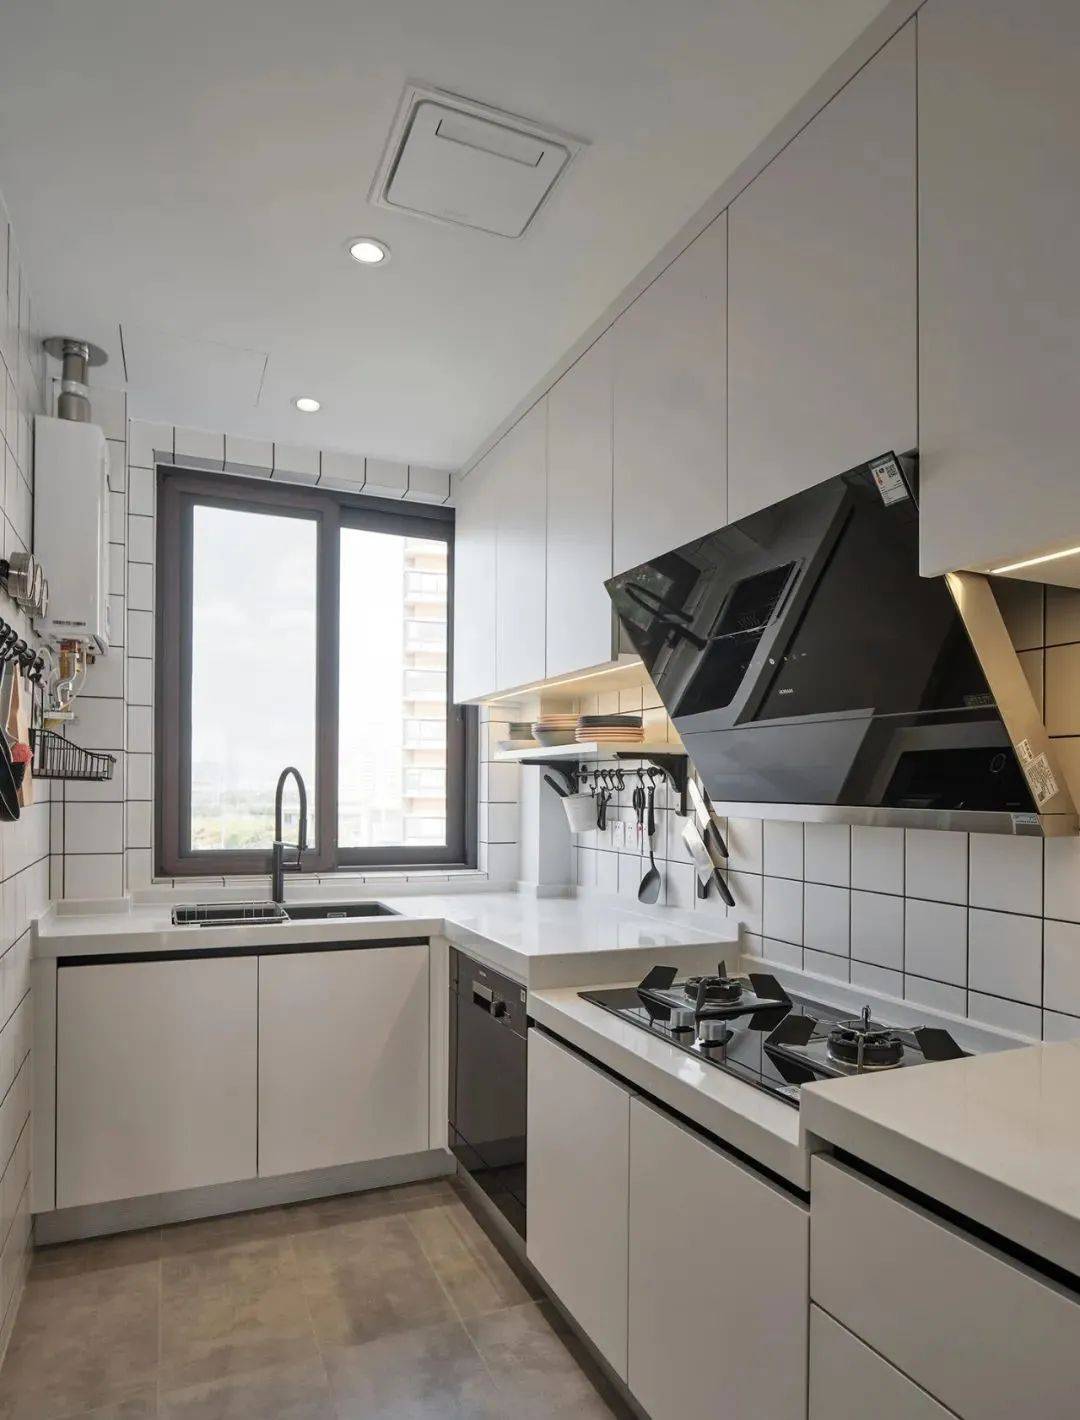 厨房,小白砖墙面搭配白色的台面与橱柜,干净清爽,高低台的设计提高